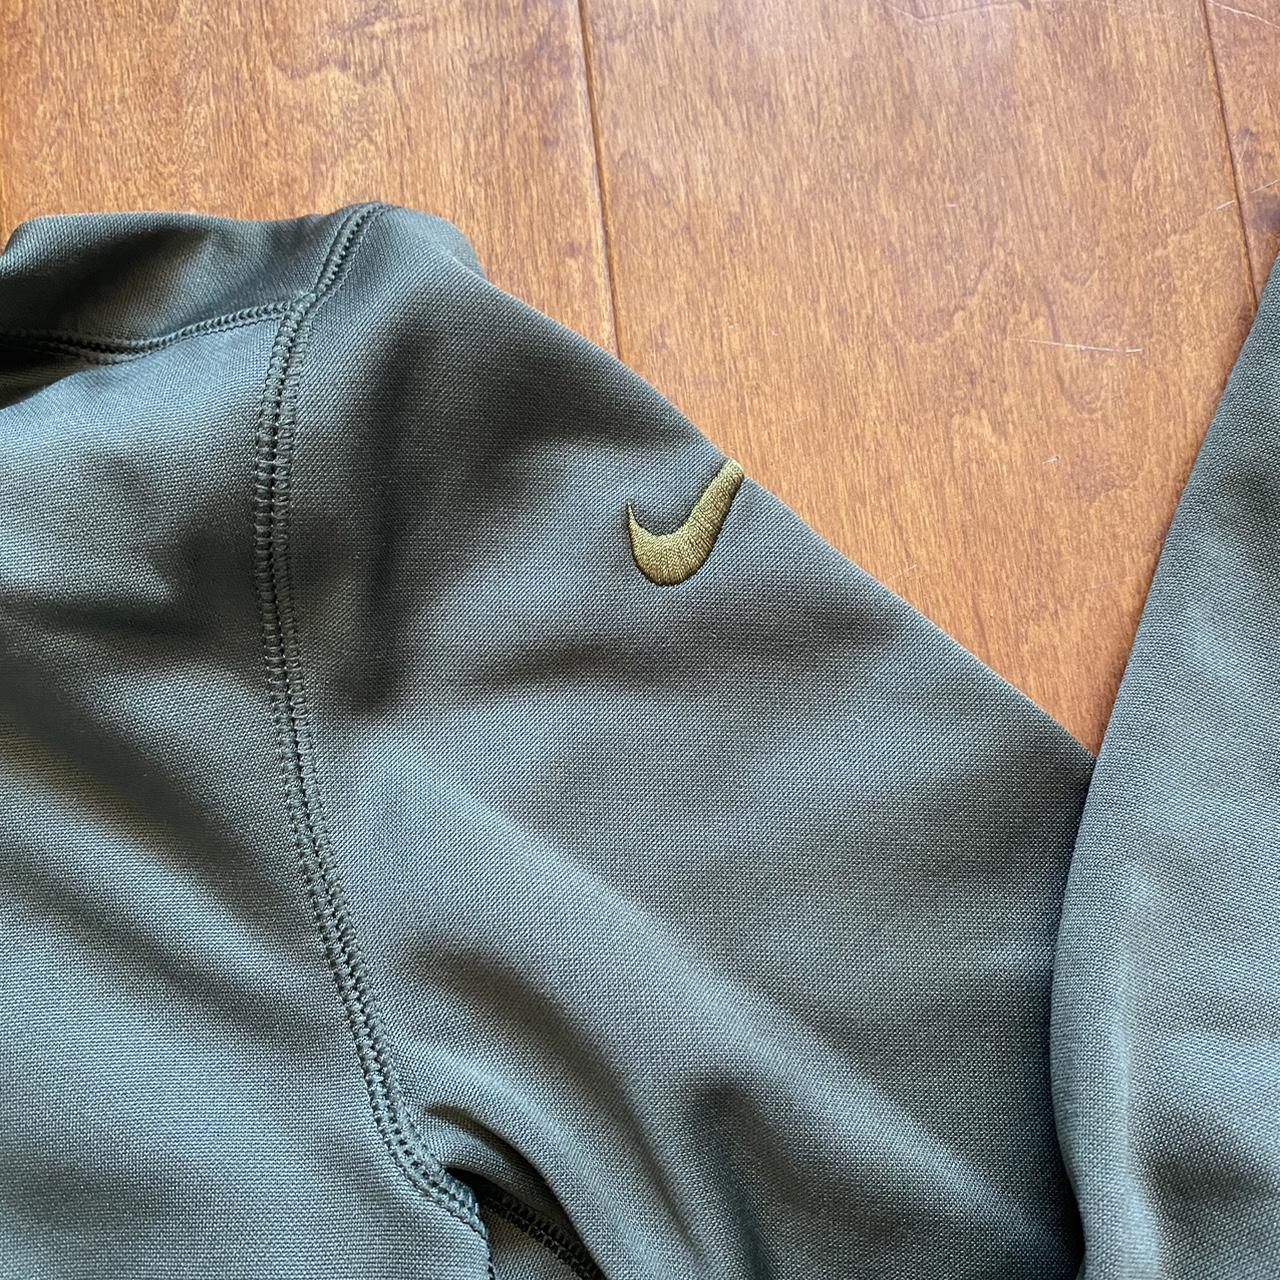 Nike Green Bay Packers NFL salute to service hoodie. - Depop